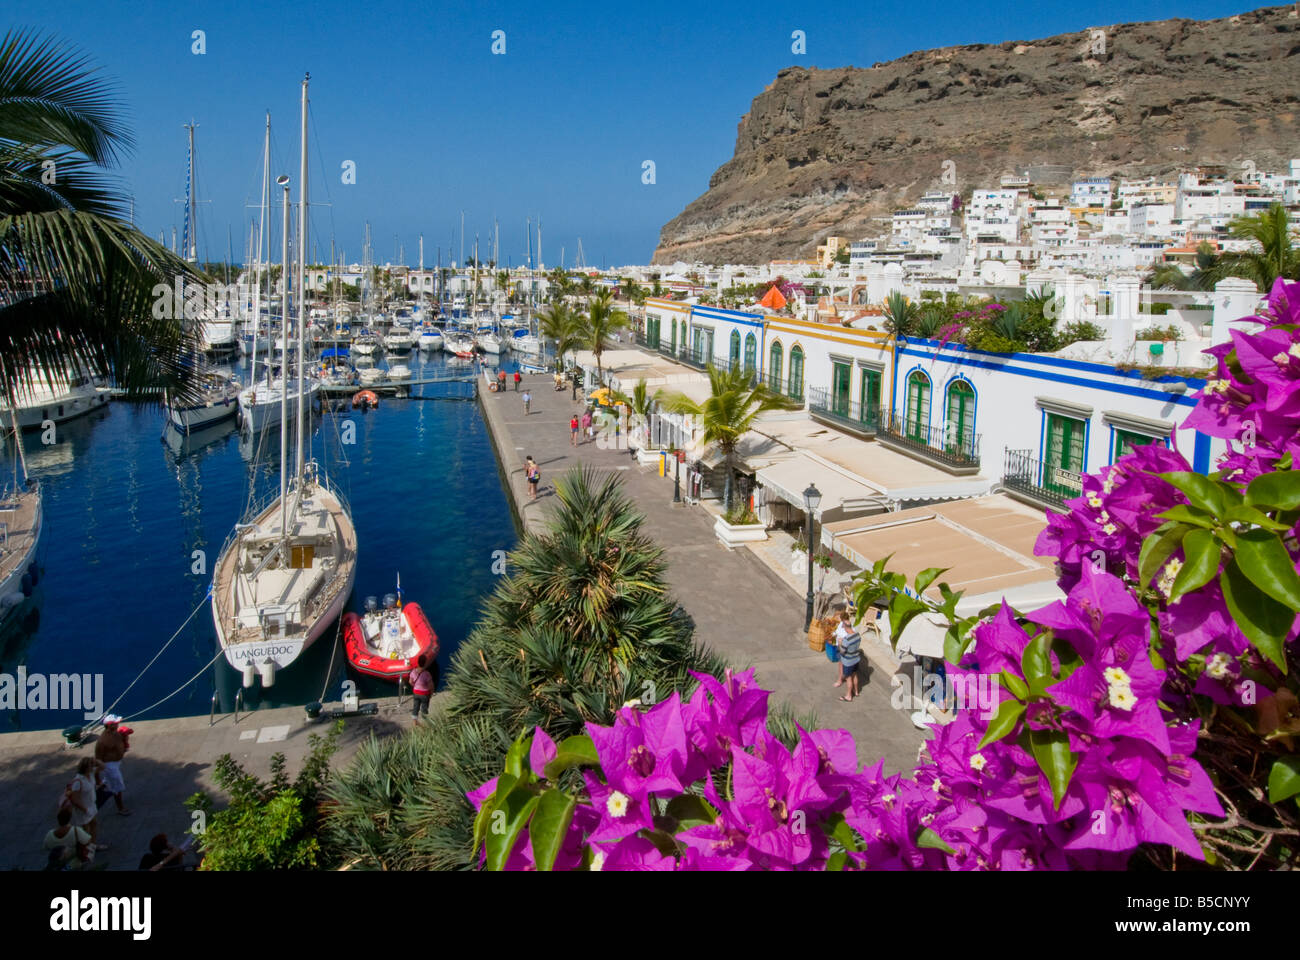 Puerto de Mogan übersicht Geschäfte restaurants bars gesehen über Bougainvillea Blumen, Yachthafen und Promenade. Gran Canaria Kanarische Inseln Spanien Stockfoto